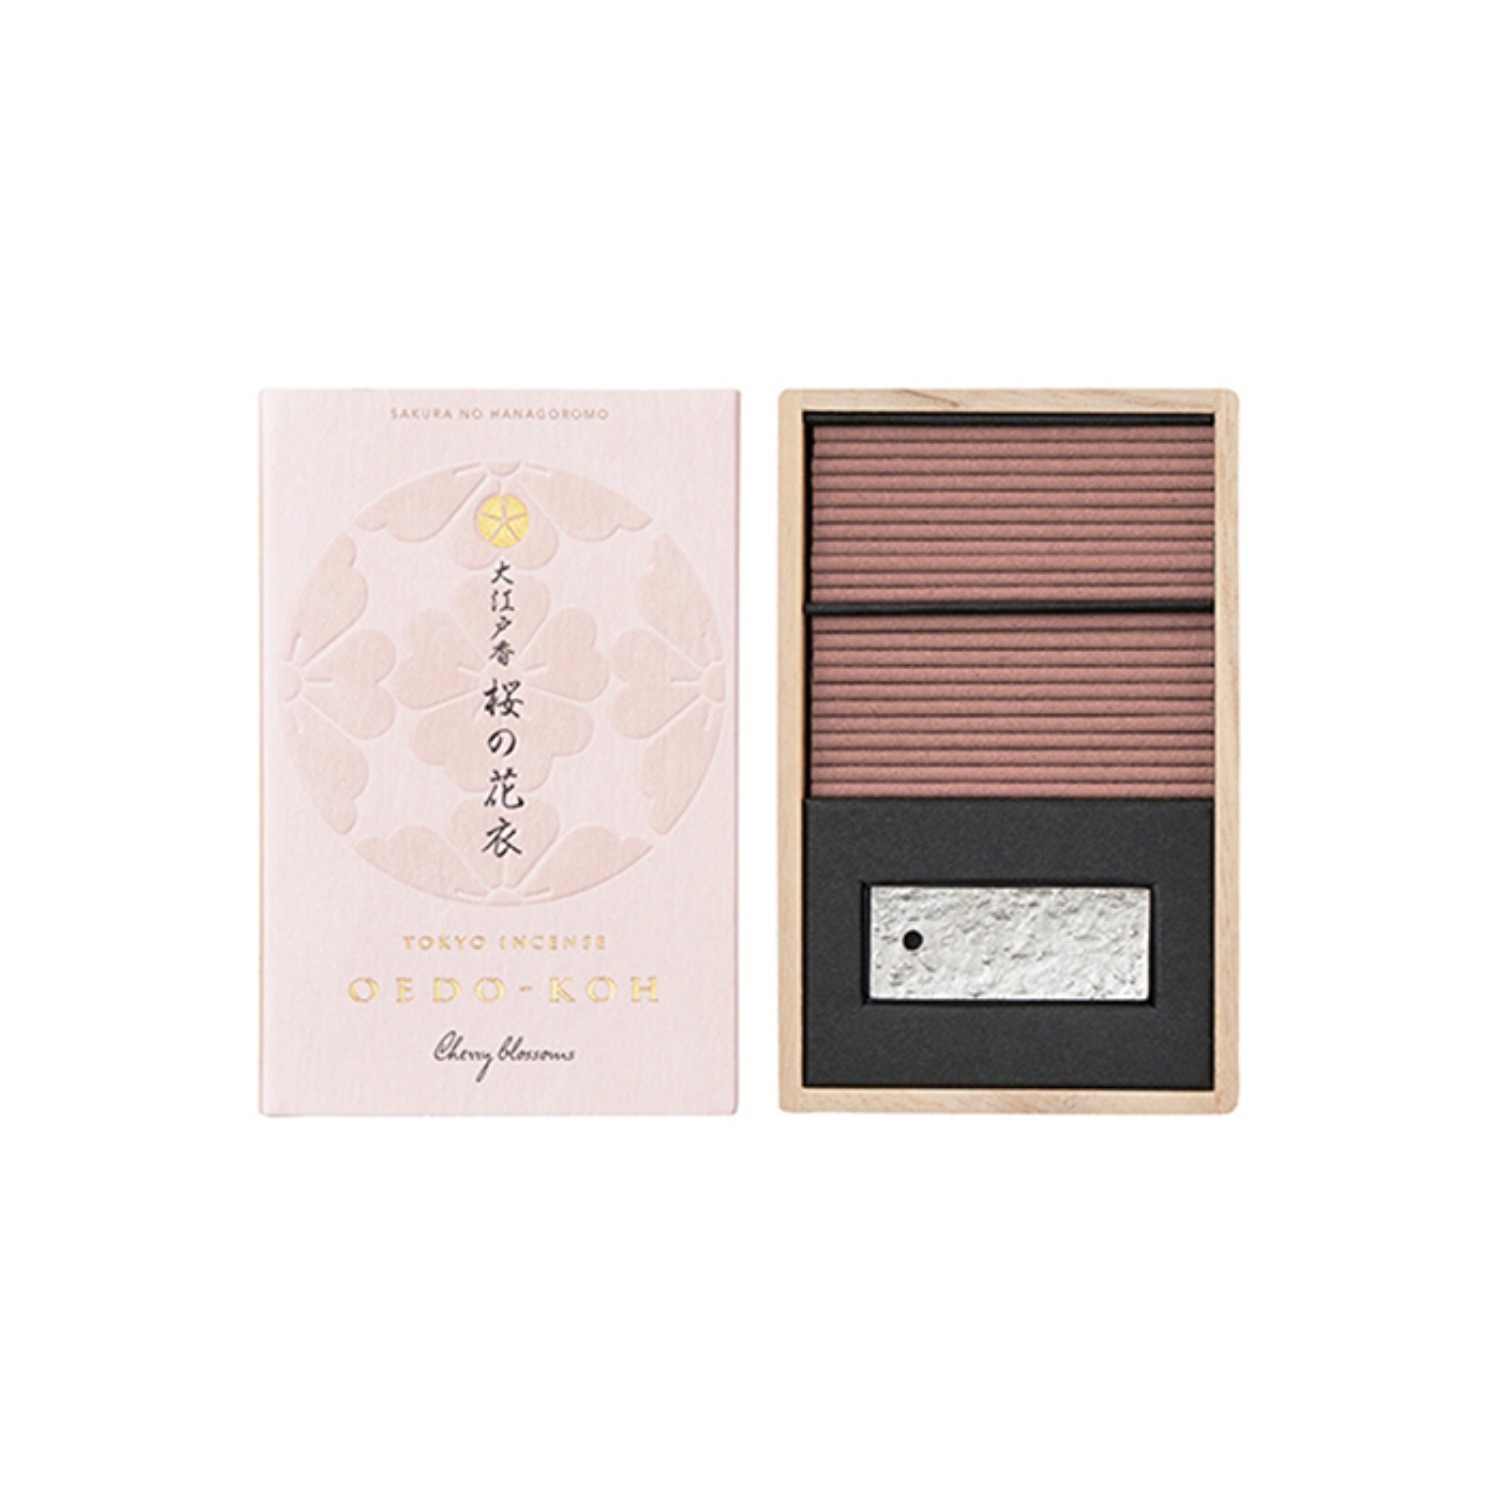 oedo-koh cherry blossoms incense